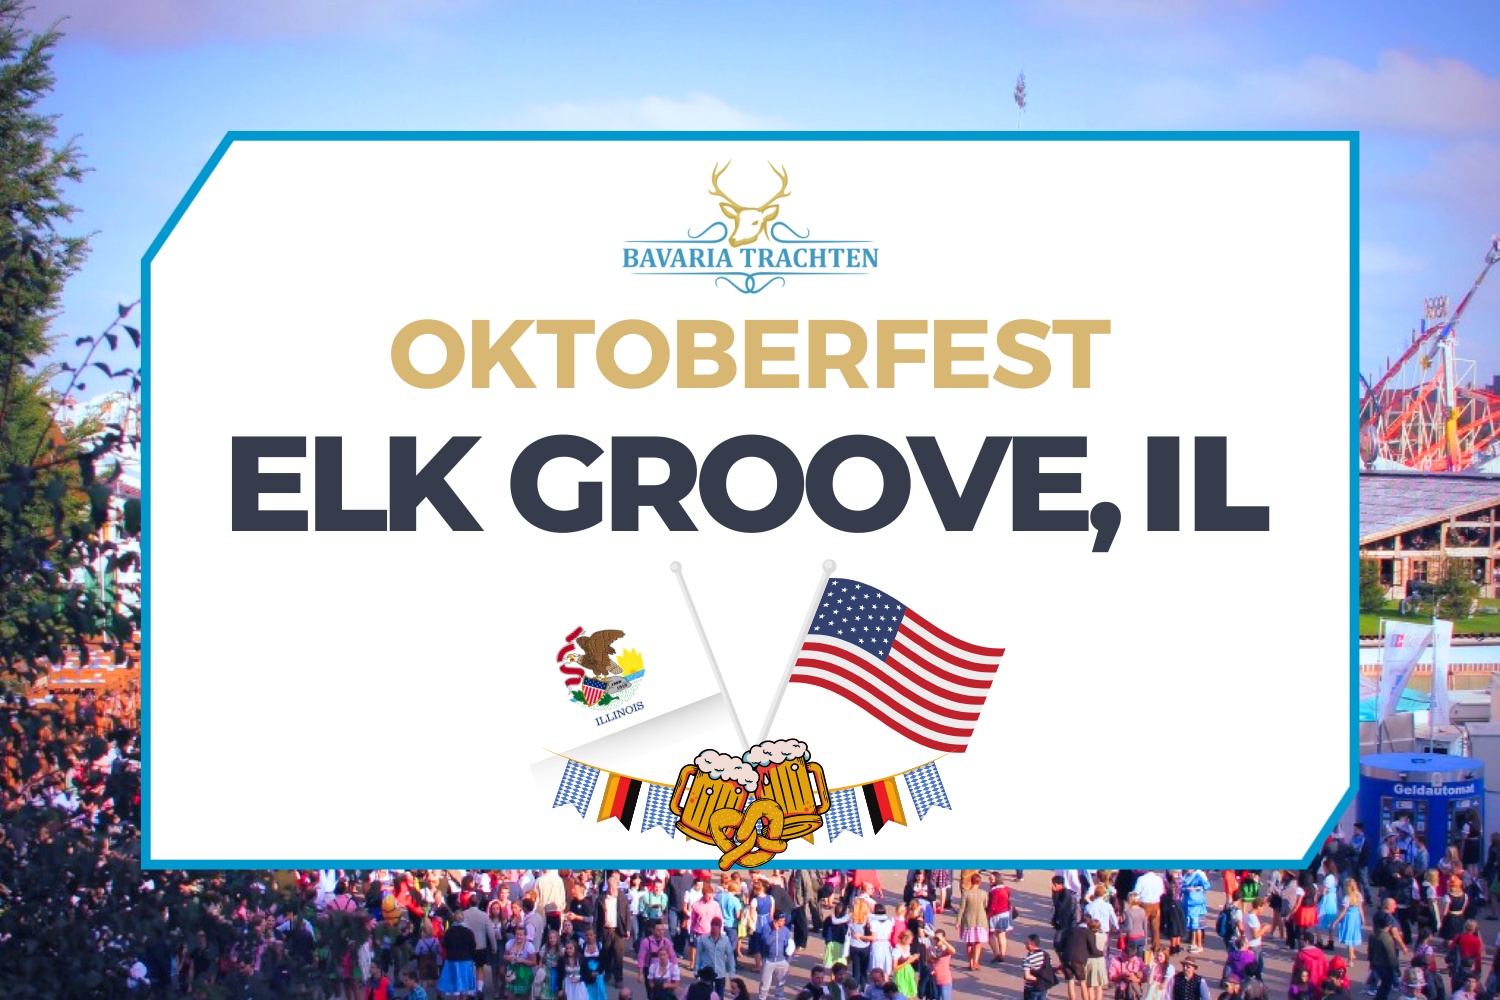 Oktoberfest Elk Groove, Illinois